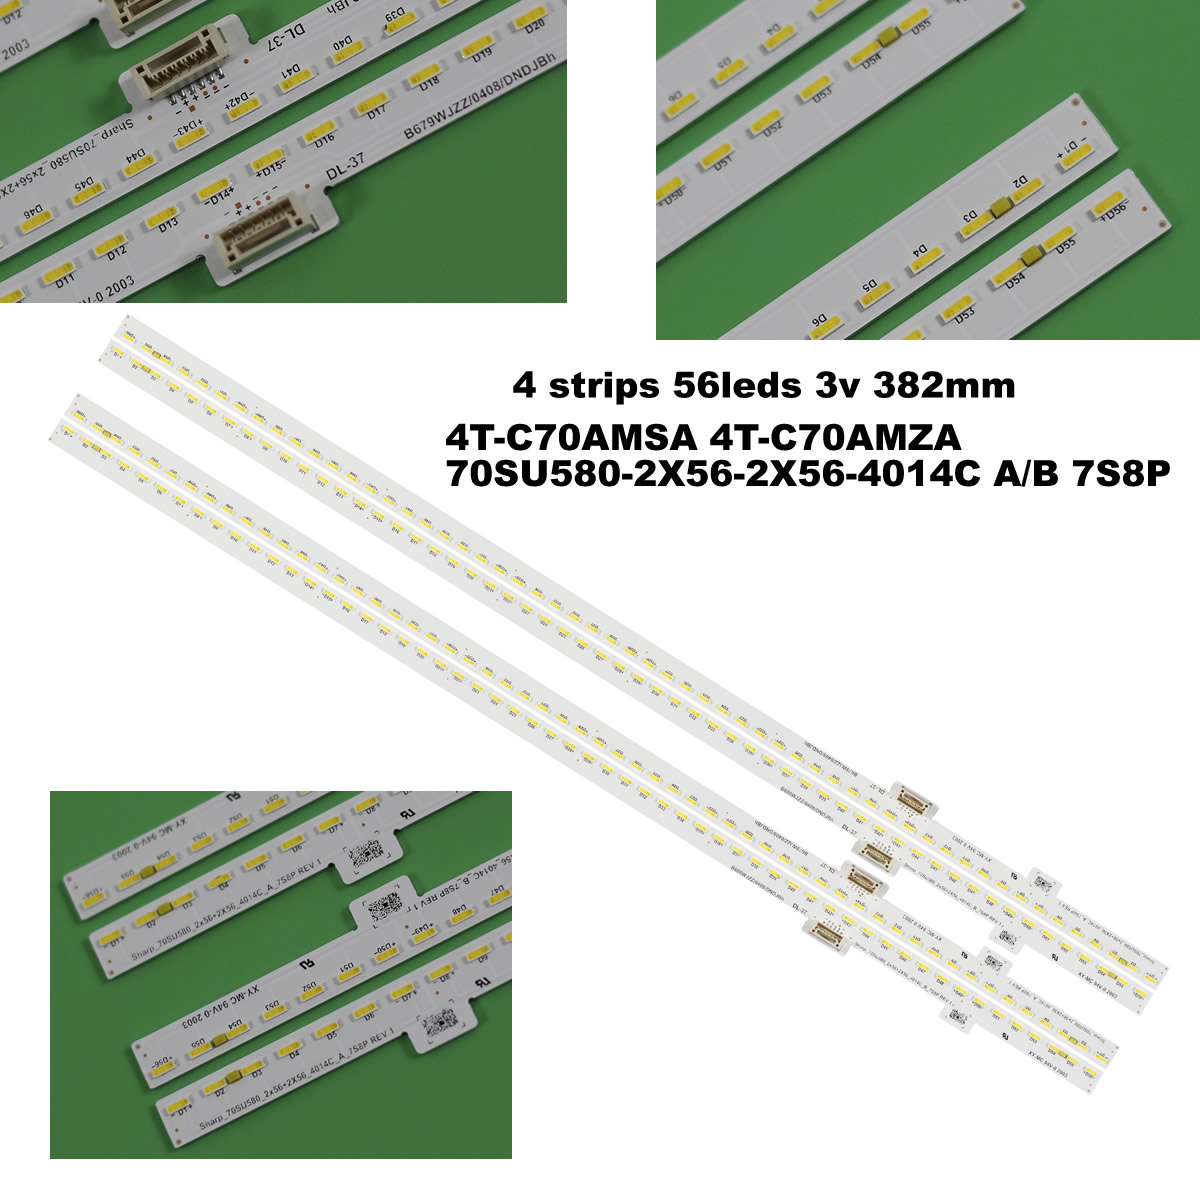 4T-C70AMSA 4T-C70AMZA 70SU580-2X56-2X56-4014C A/B 7S8P STG700A16 LED STRIP SHARP